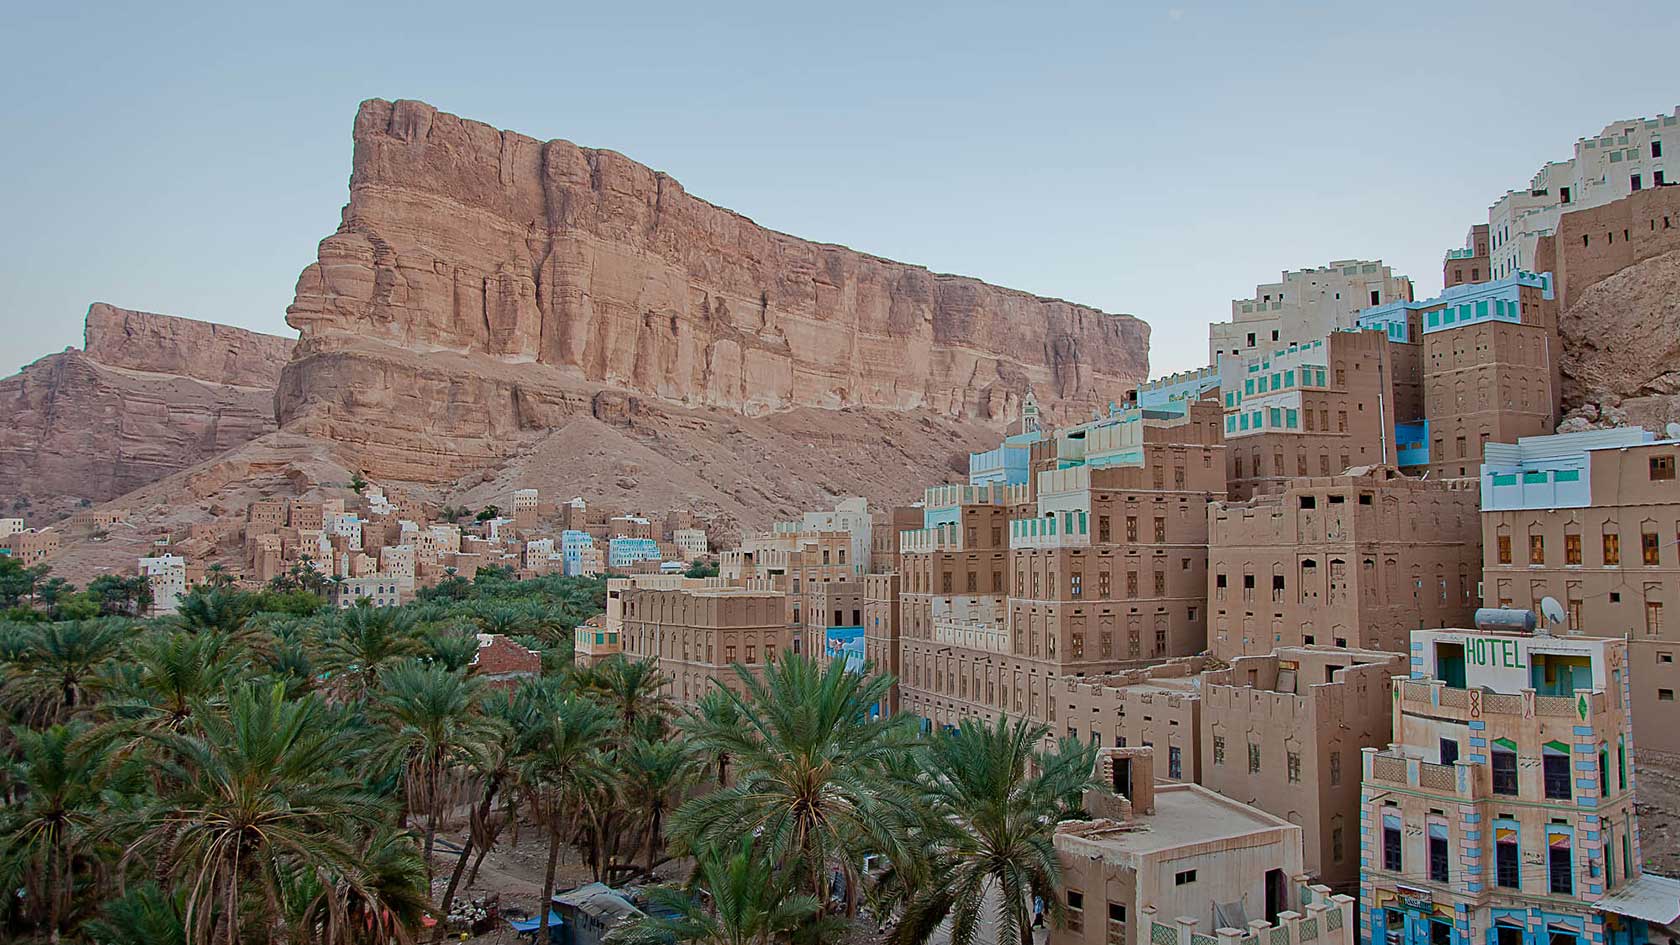  Veduta di una città yemenita e del paesaggio desertico circostante